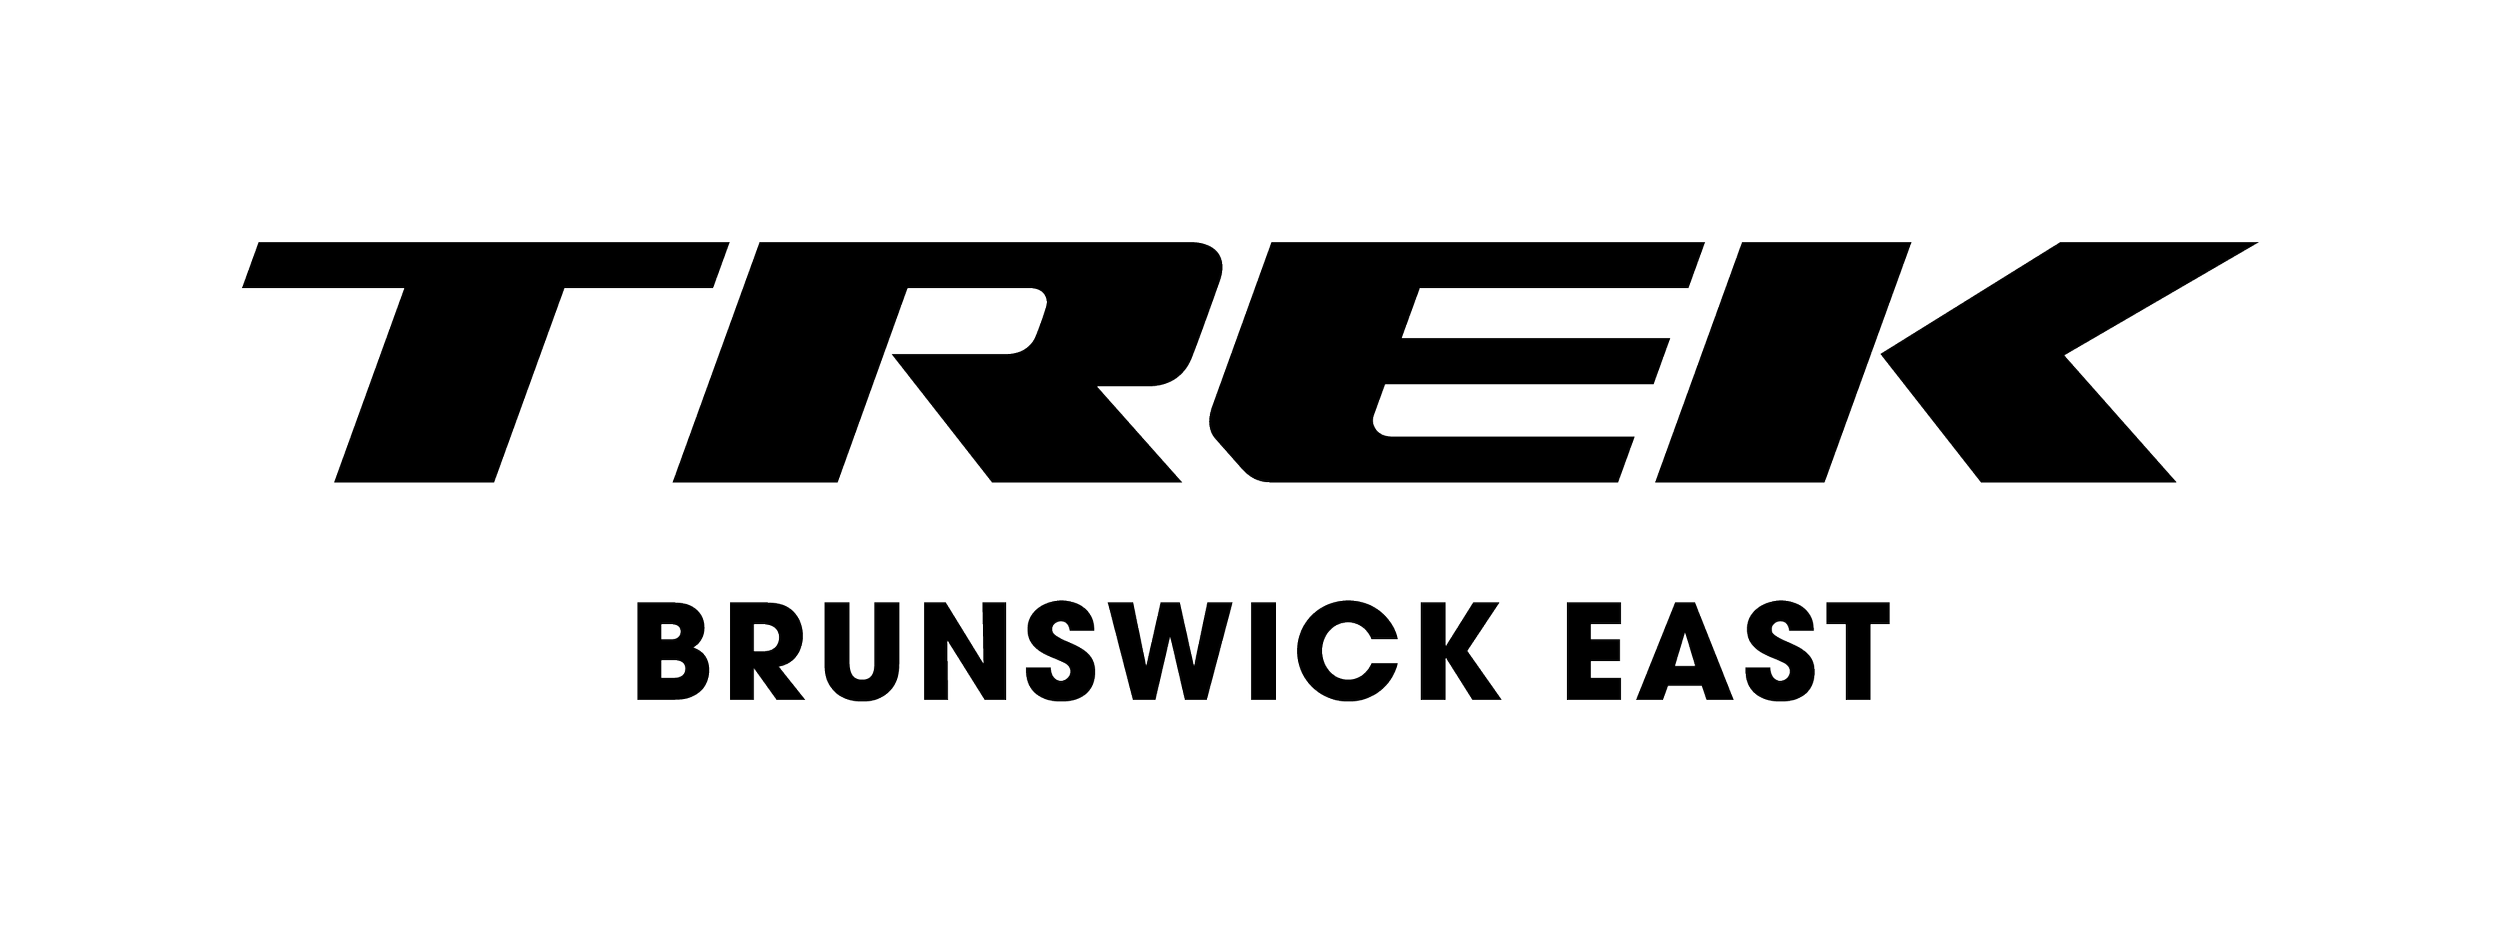 2018_Trek_logo_location_BrunswickEast_black.png